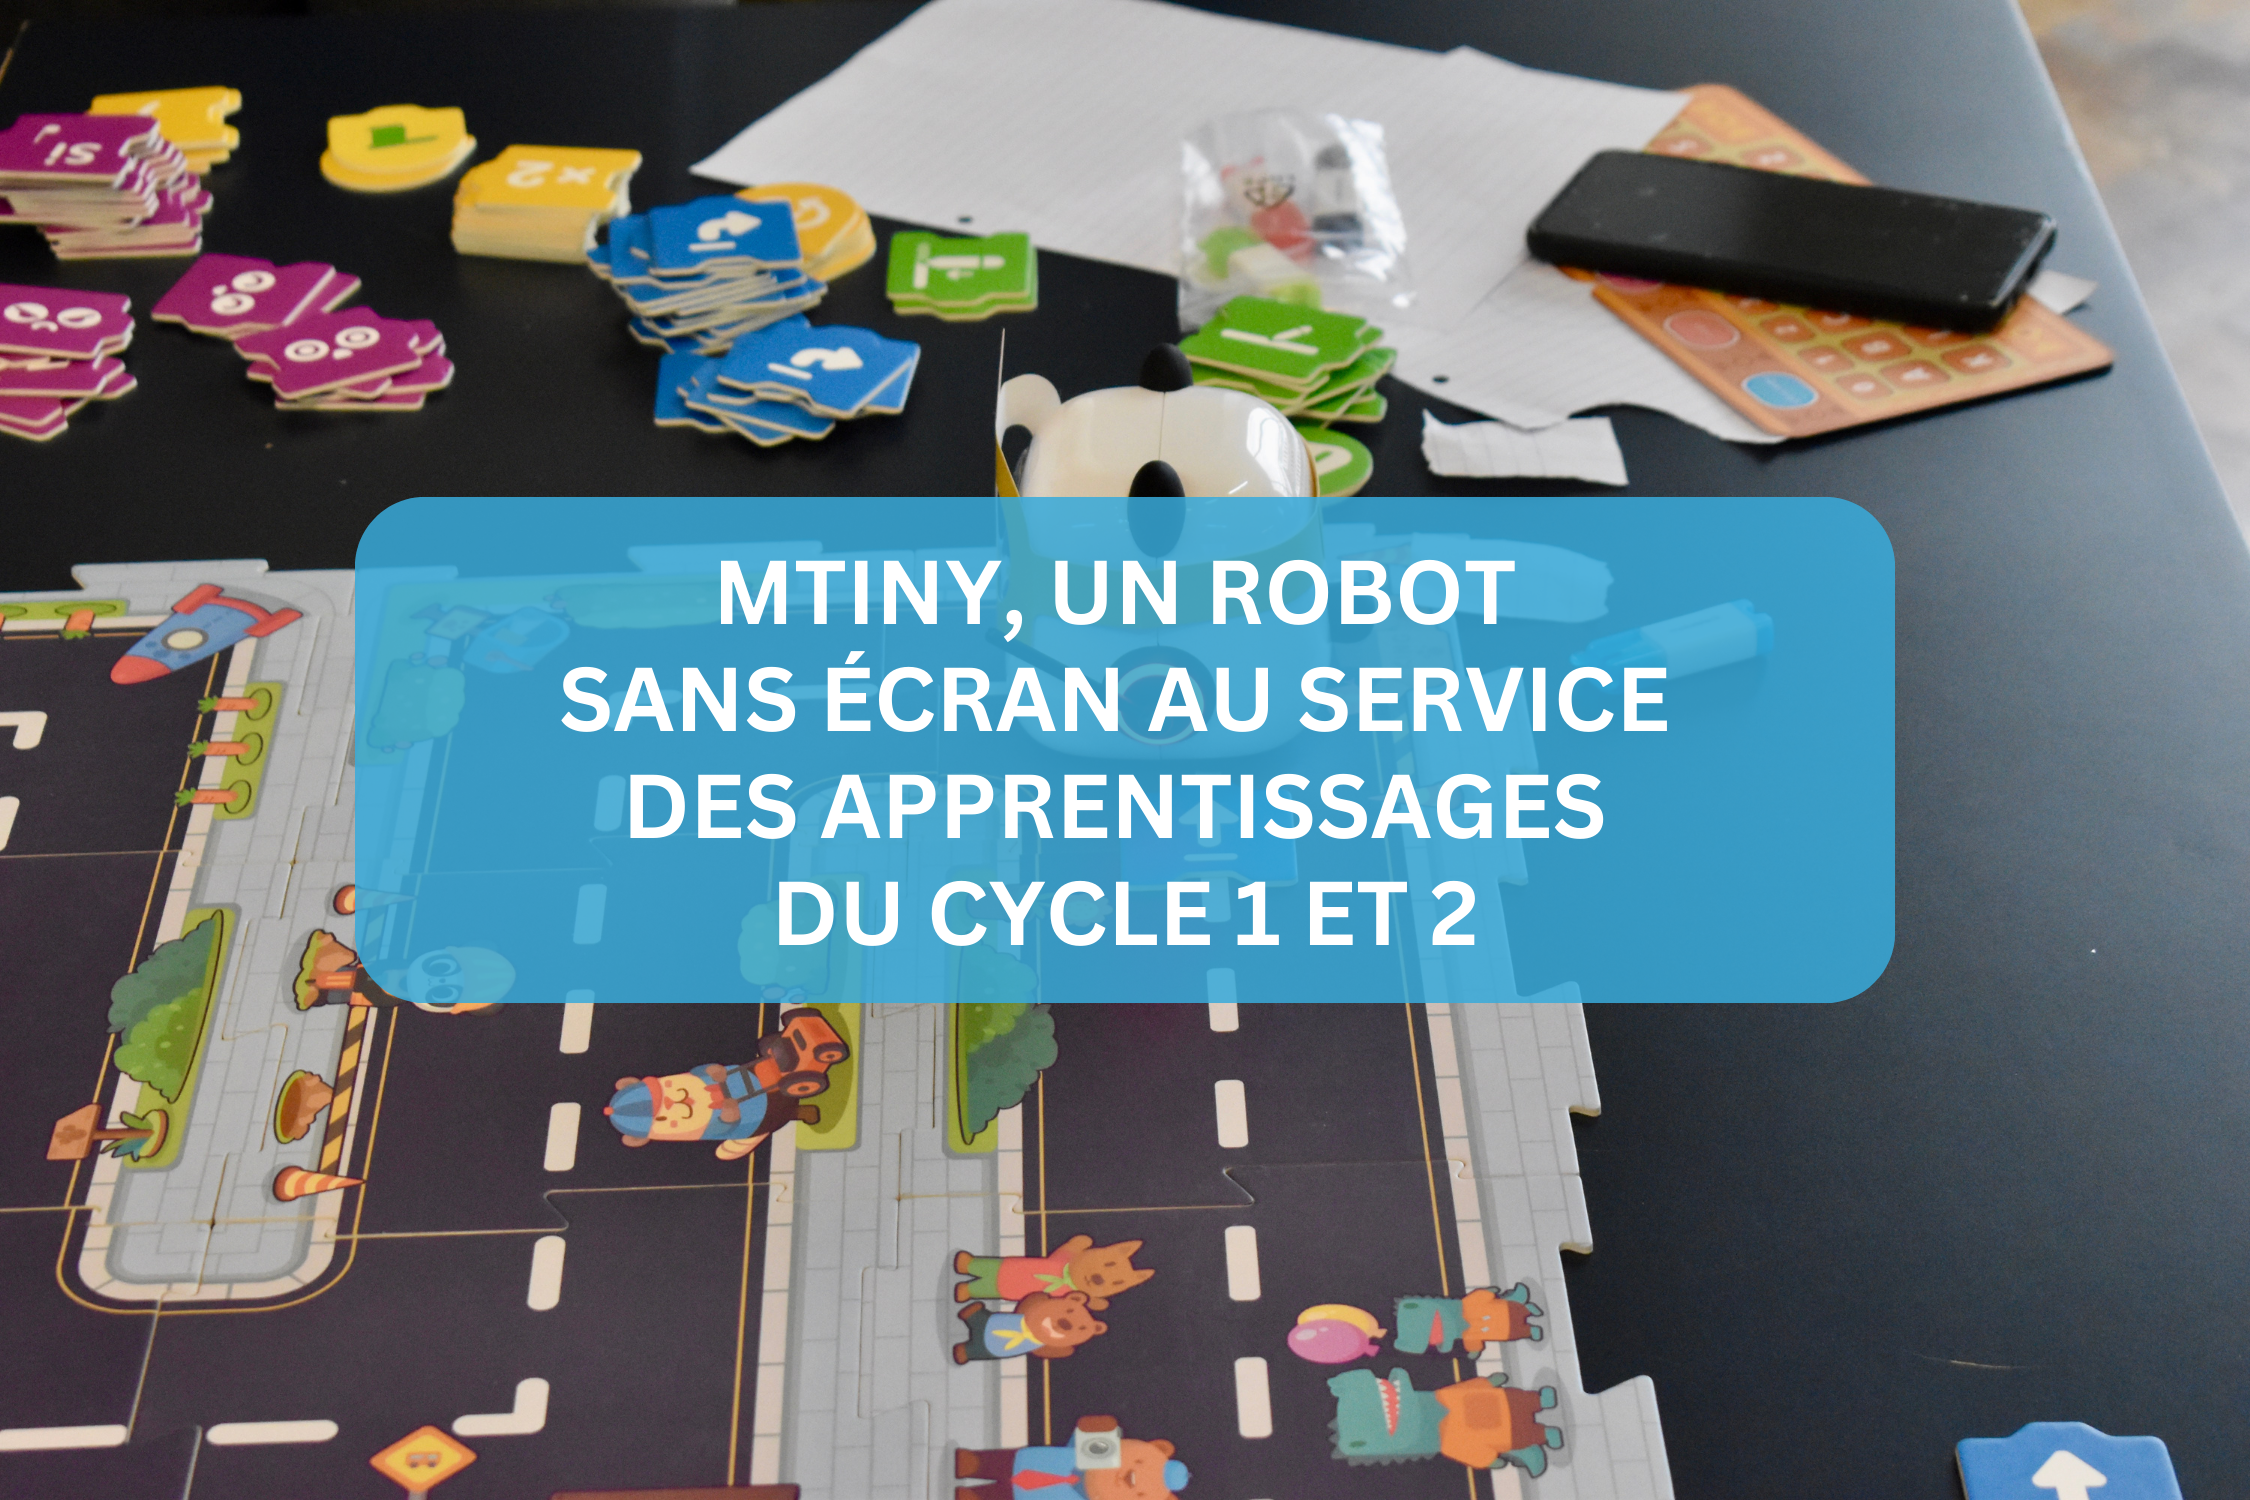 mTiny, un robot sans écran au service des apprentissages du cycle 1 et 2